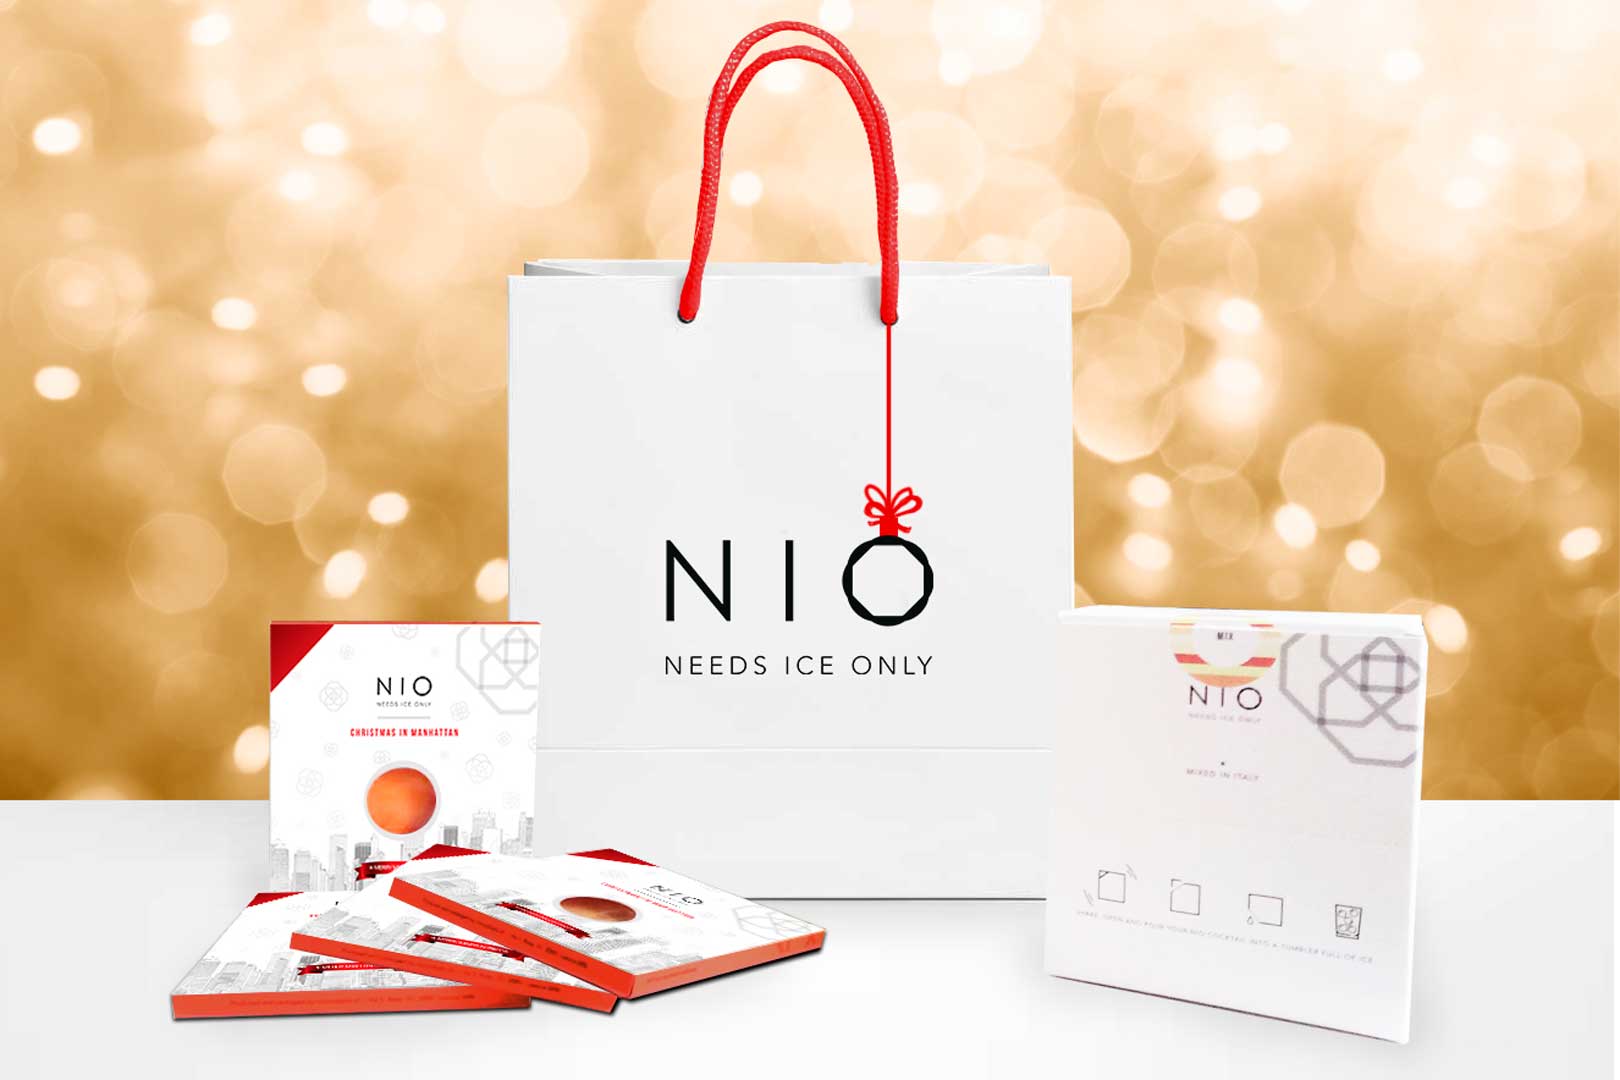 Nio Needs Ice Only - Milano